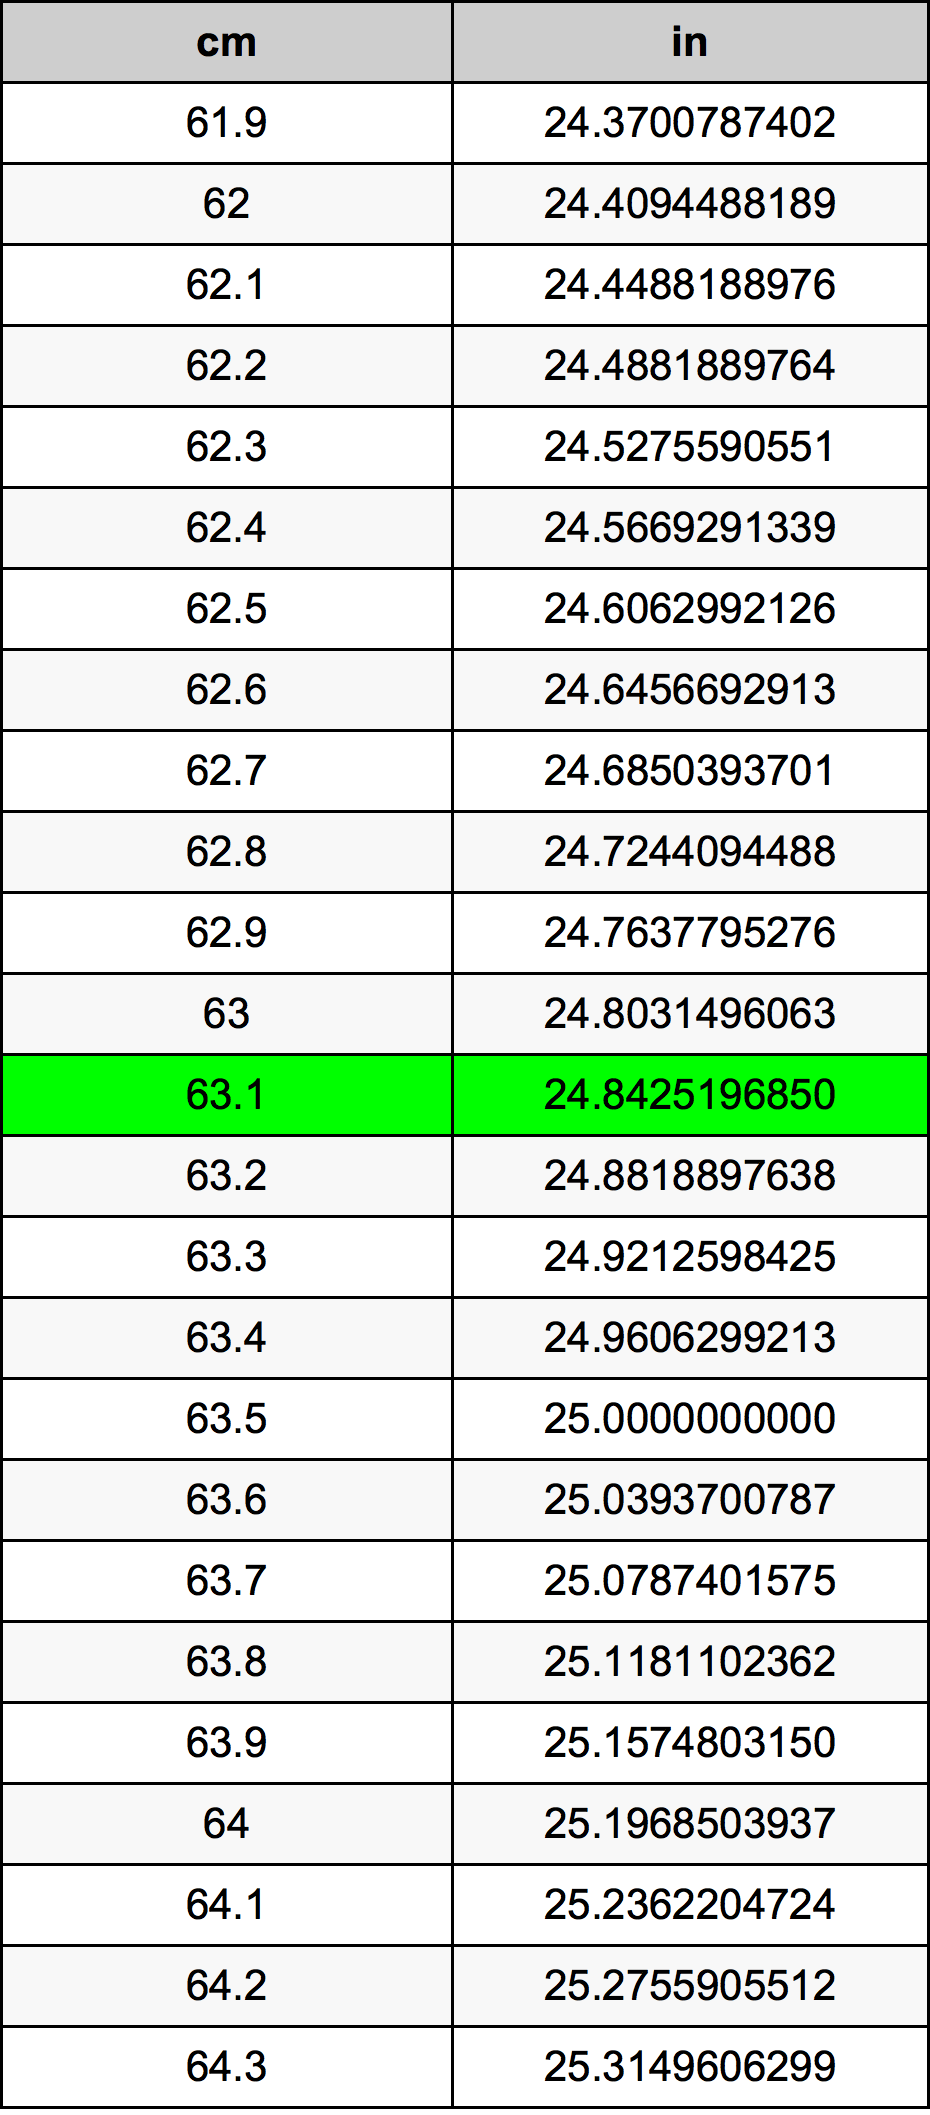 63.1 Centiméter átszámítási táblázat